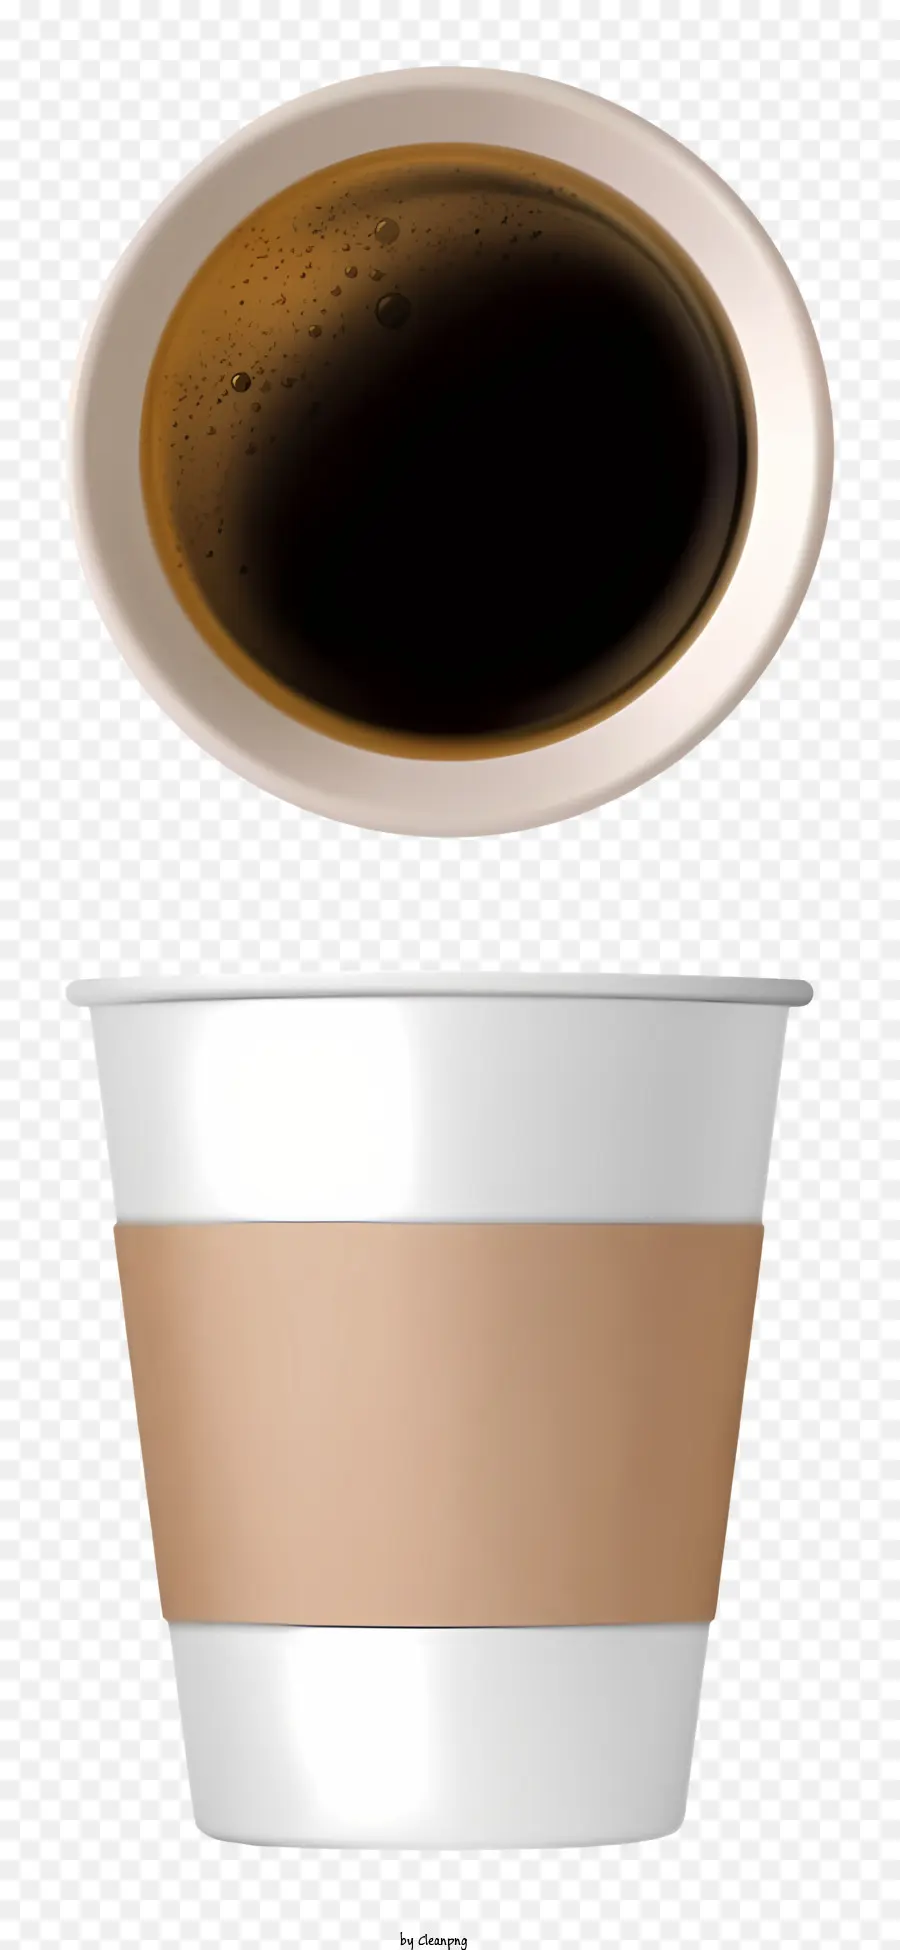 cà phê - Cà phê với chất lỏng màu nâu rỗng bên trong